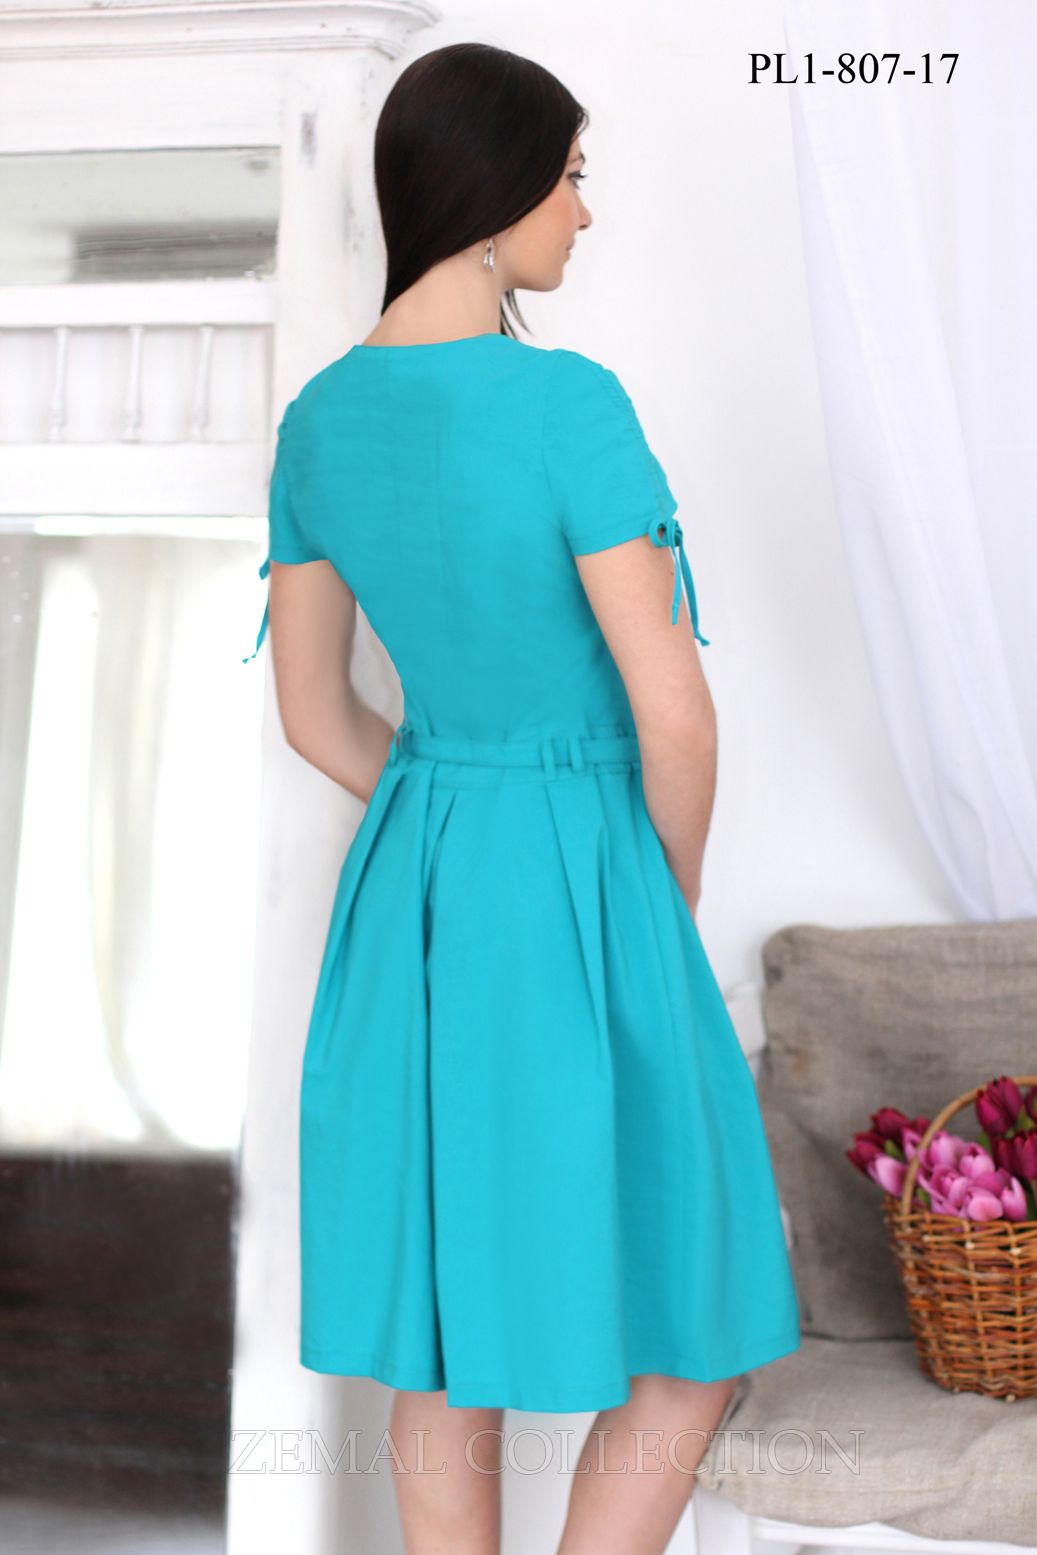 Платье PL1-807 купить на сайте производителя